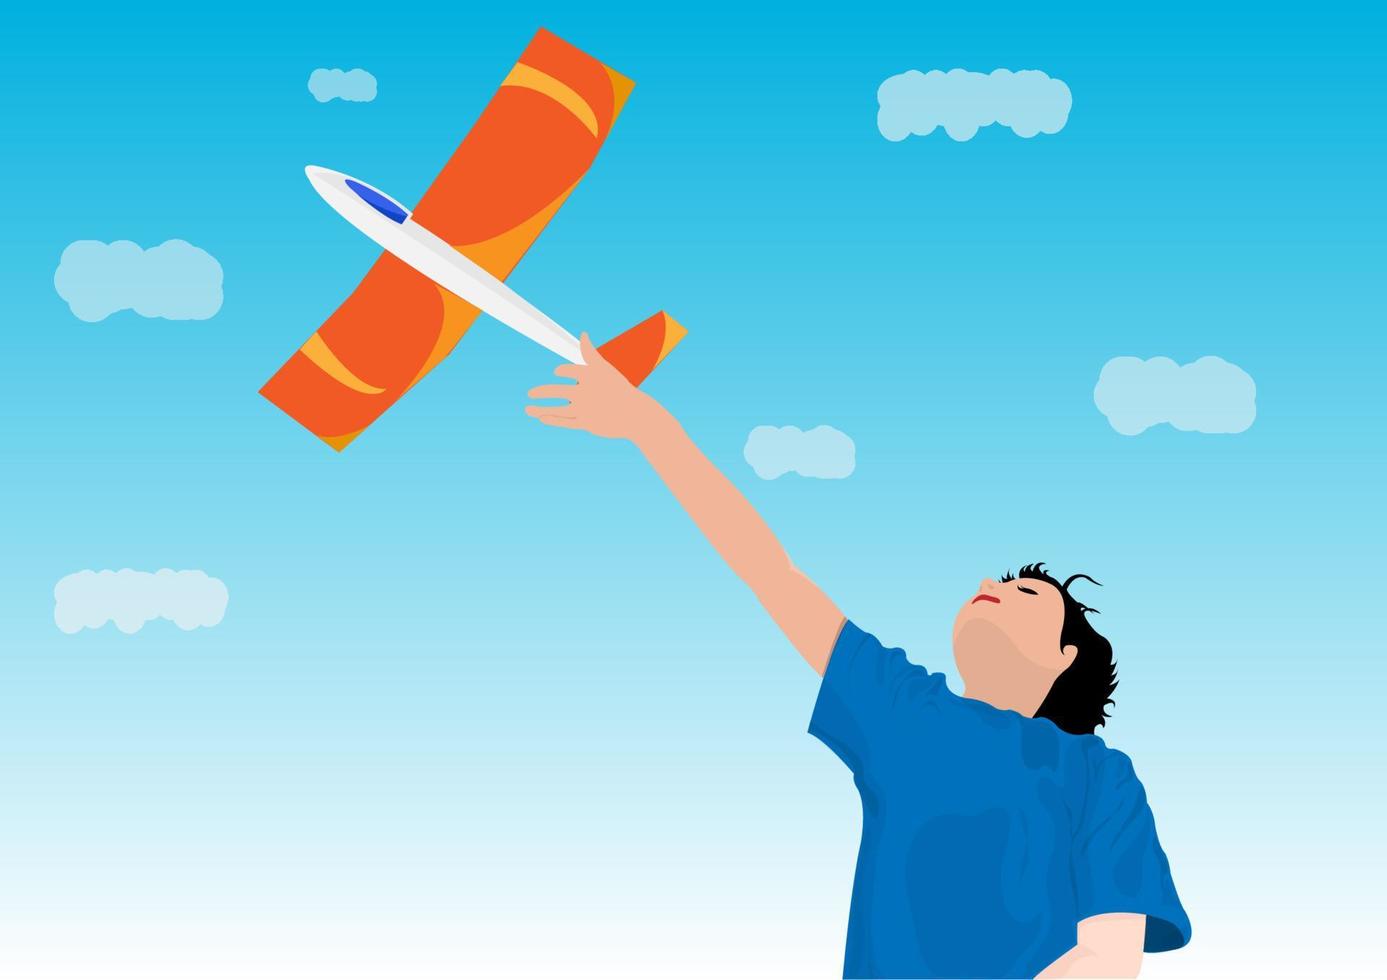 niño feliz jugando con un avión naranja al aire libre ideas para niños y entretenimiento. vector de ilustración de dibujos animados de estilo plano